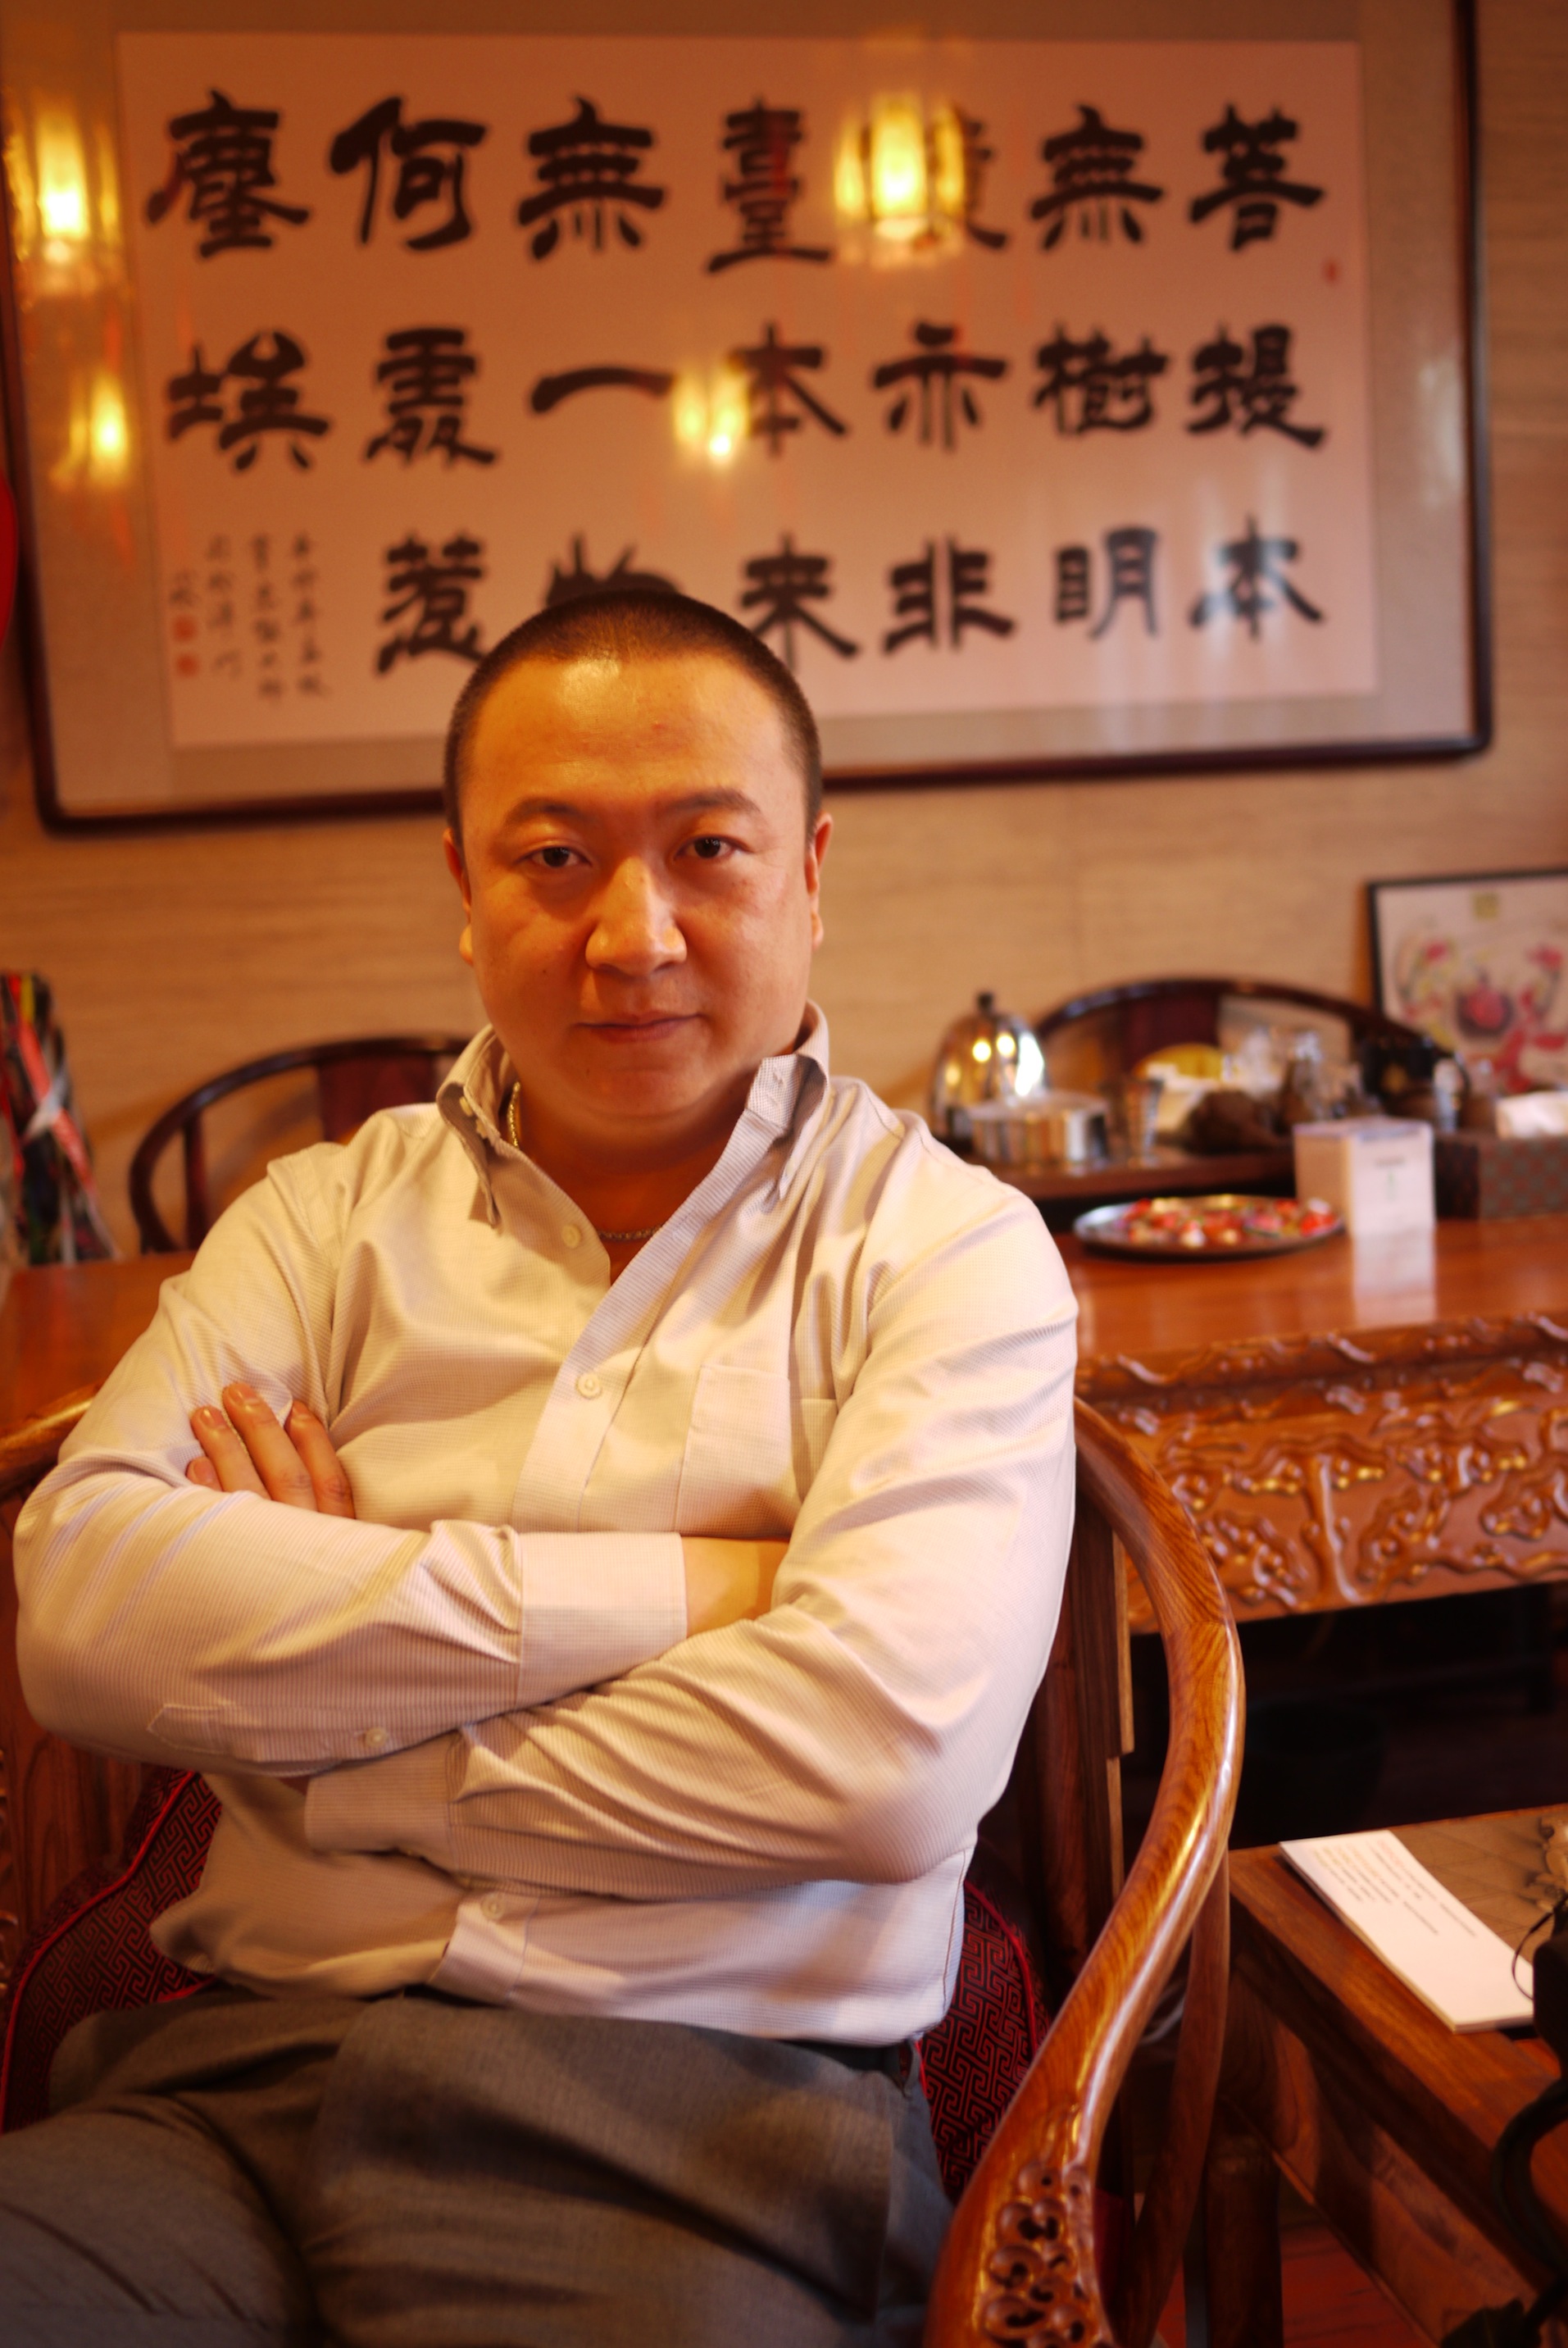 Producer Wang Yu